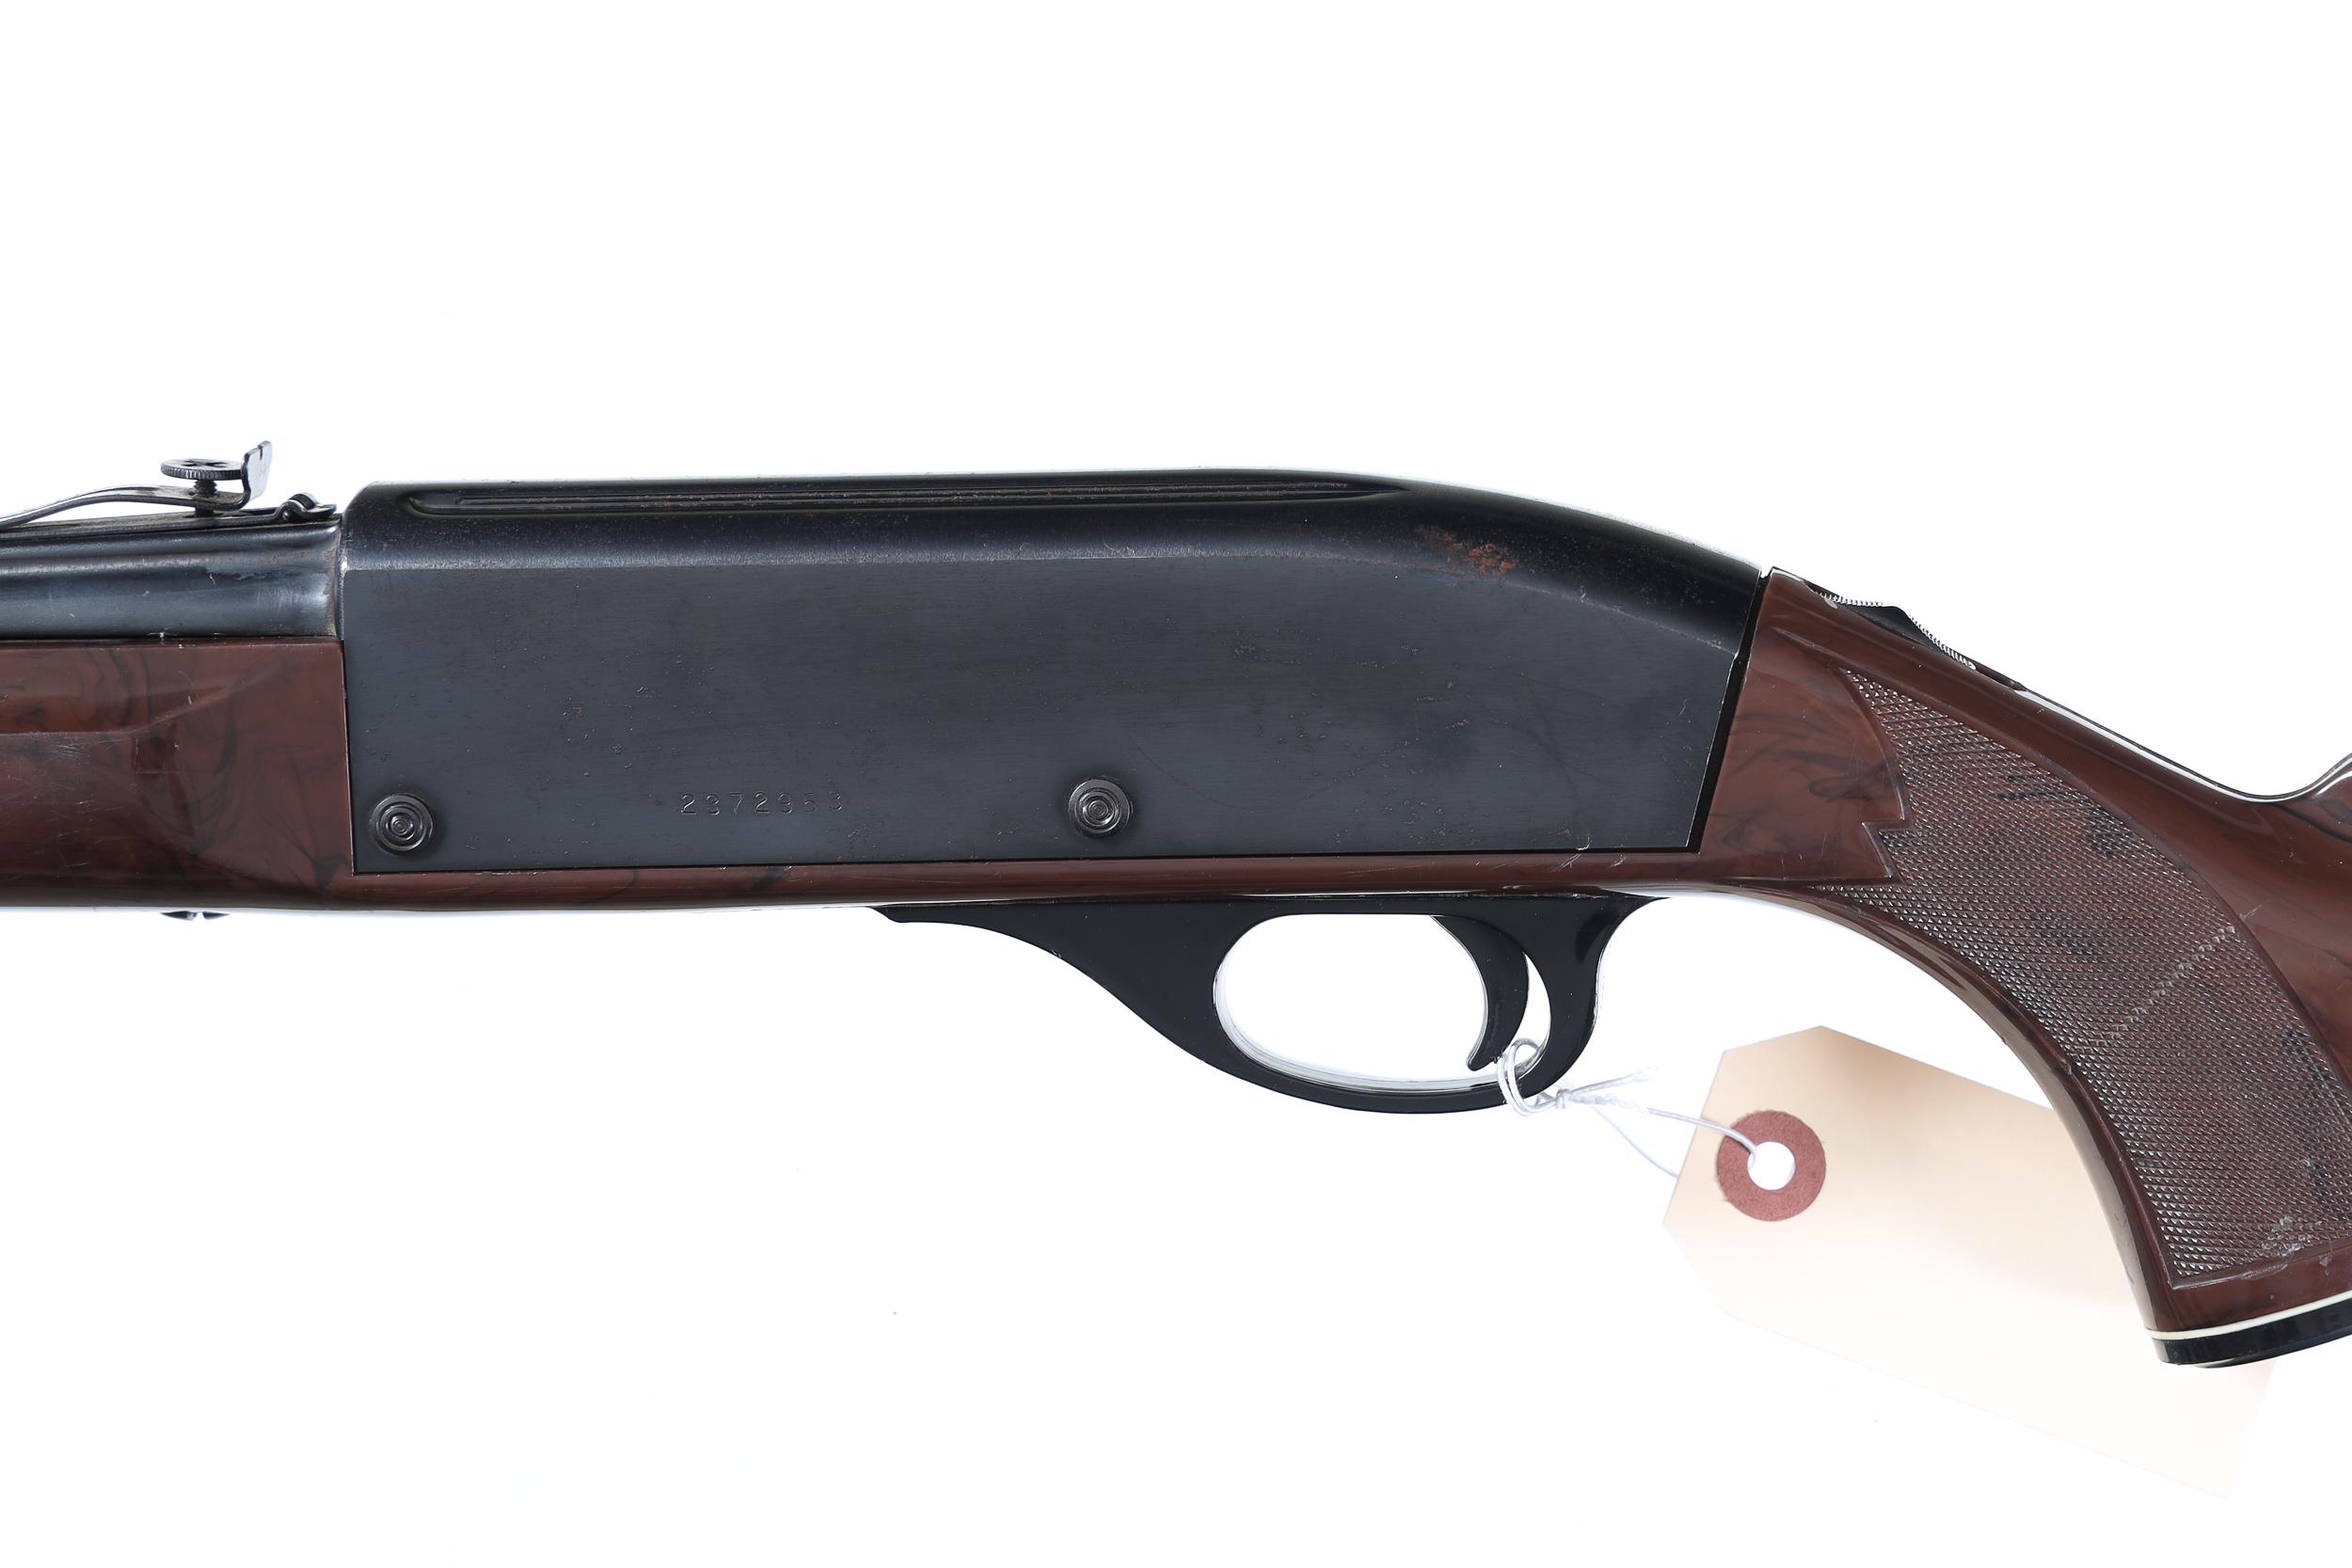 Remington Nylon 66 Semi Rifle .22 lr